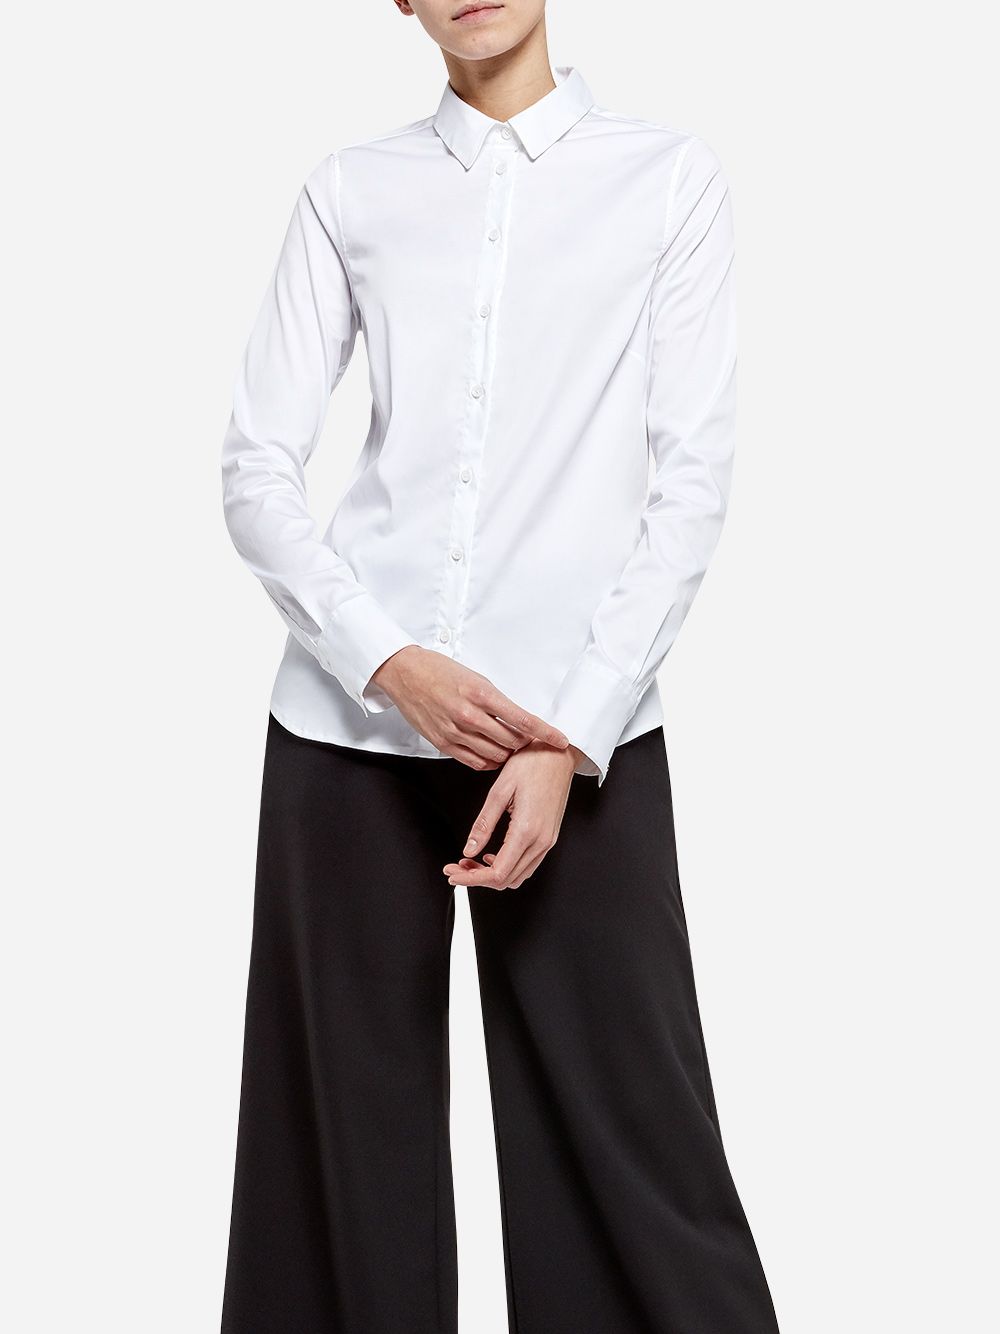 Camisa Branca Essencial 01 | A-line Clothing